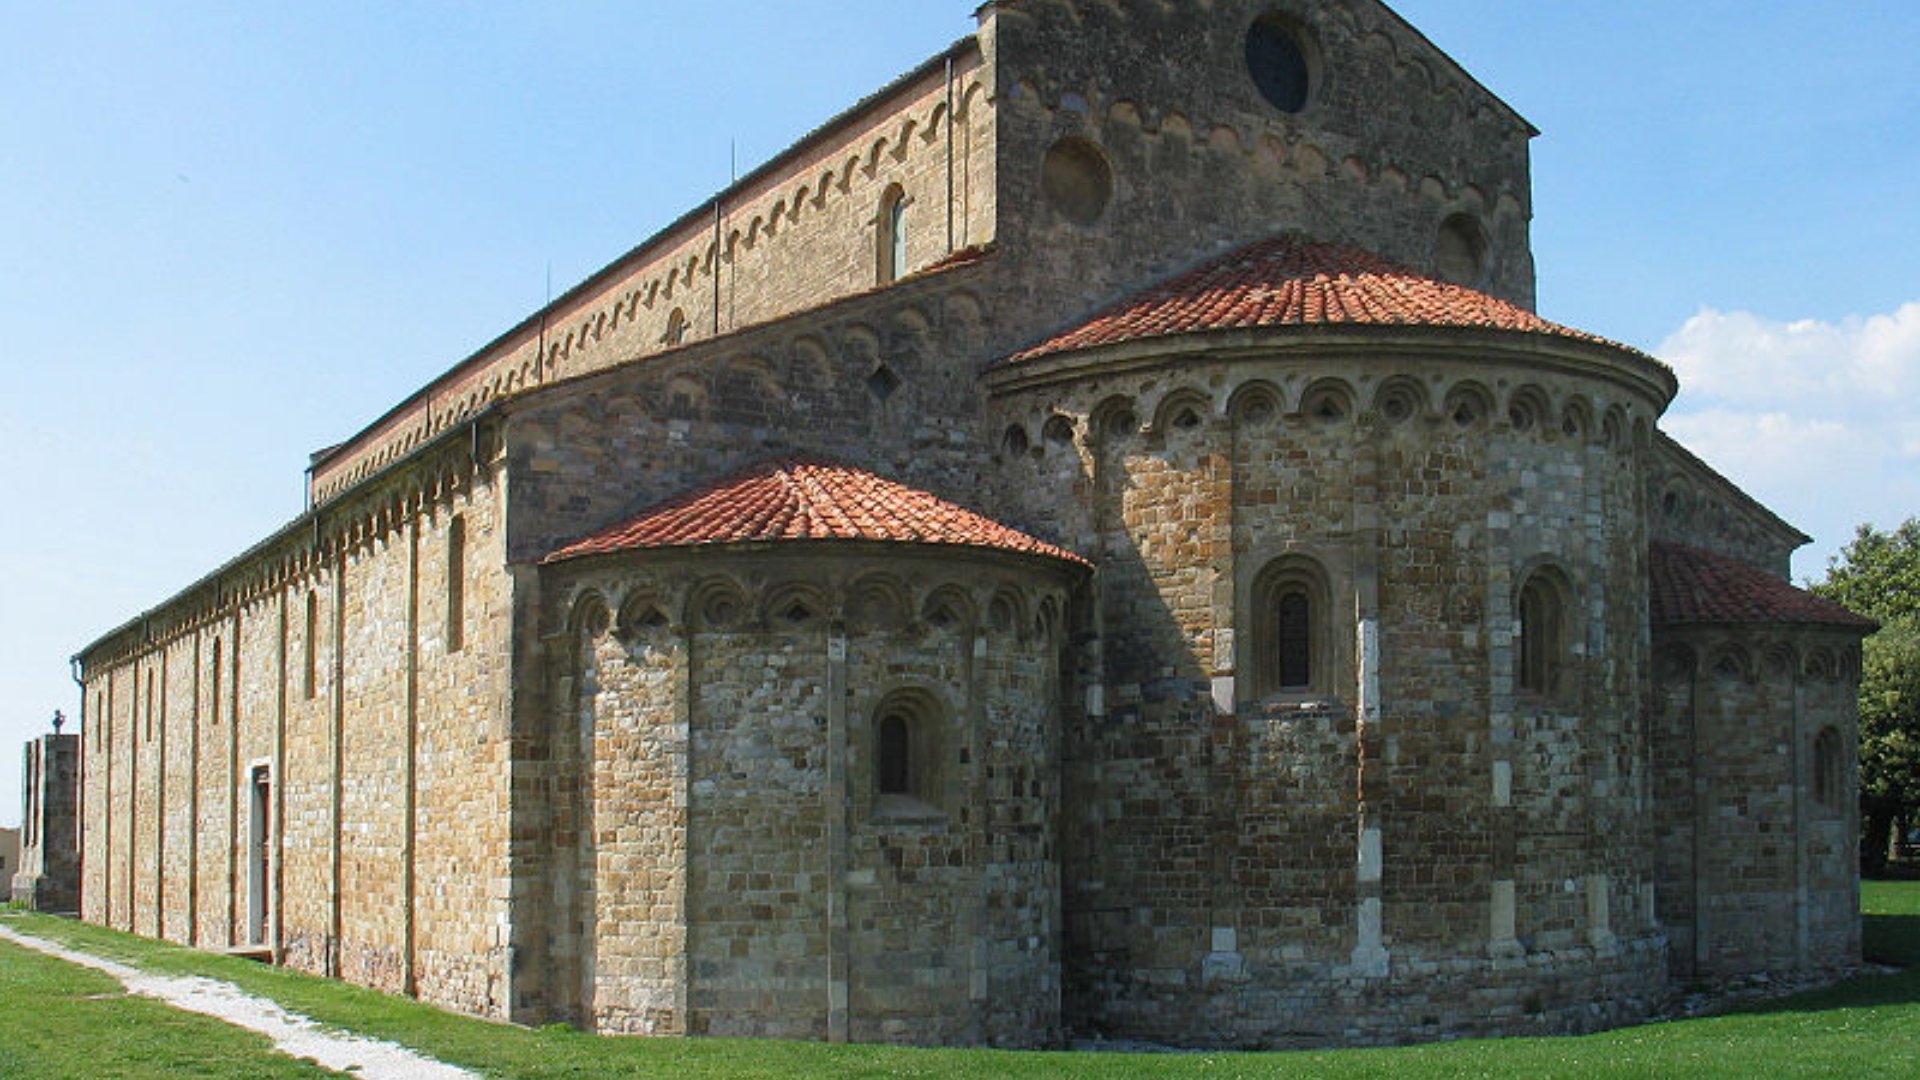 Basilica di San Piero a Grado